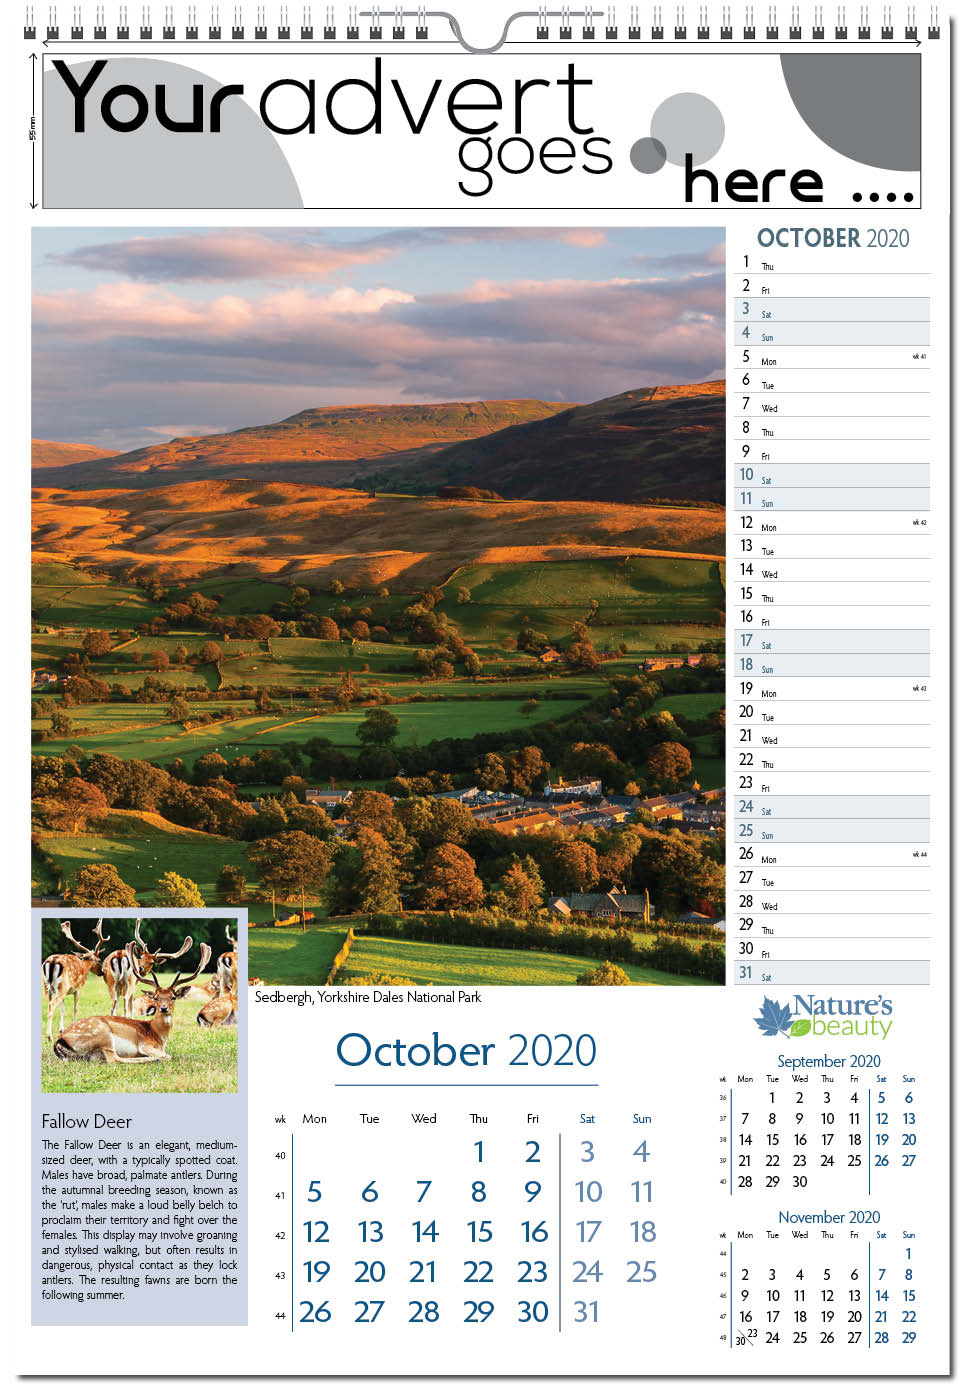 2020 Deer Rut Calendar | Calendar Printable Free